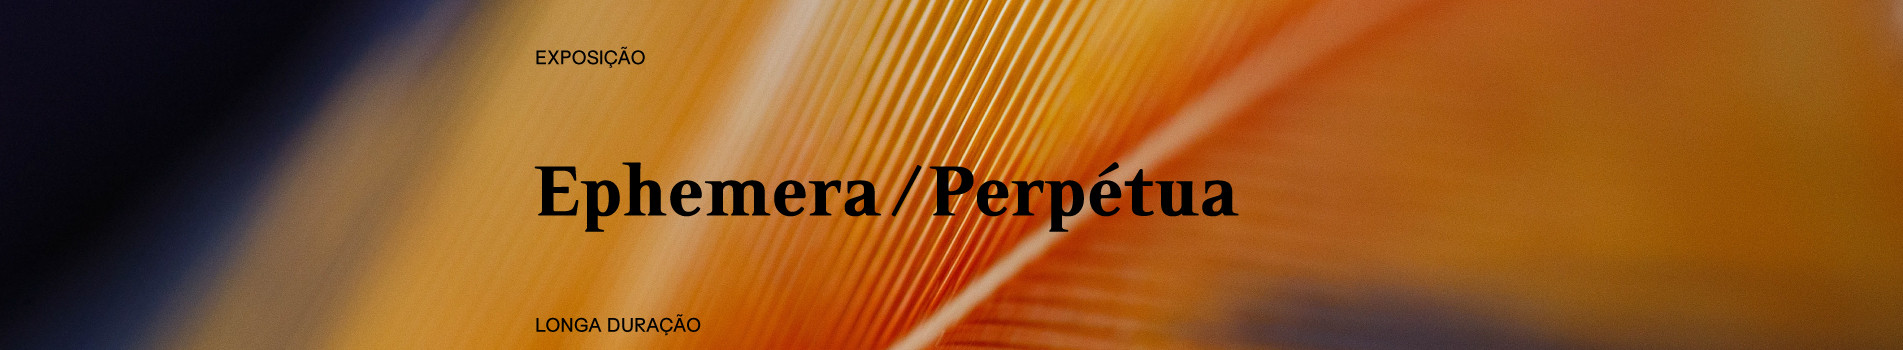 Banner exposição Ephemera/Perpétua